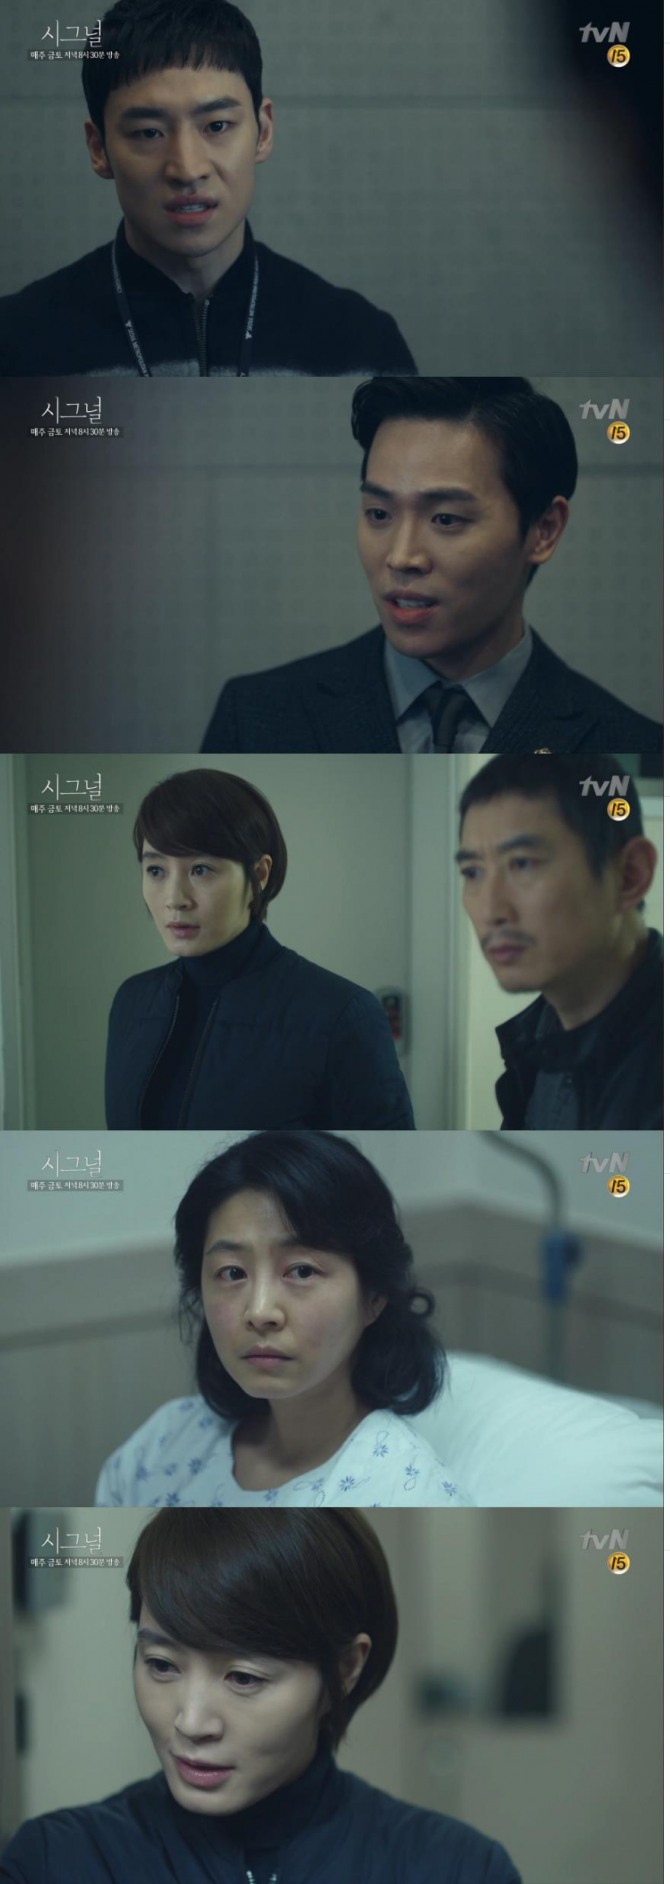 13일 밤 방송된 tvN '시그널'은 차수현(김혜수)이 '대도 사건'의 진범 한세규(이동하)를 체포하는 숨막히는 장면이 전개됐다./사진=tvN 방송 캡처